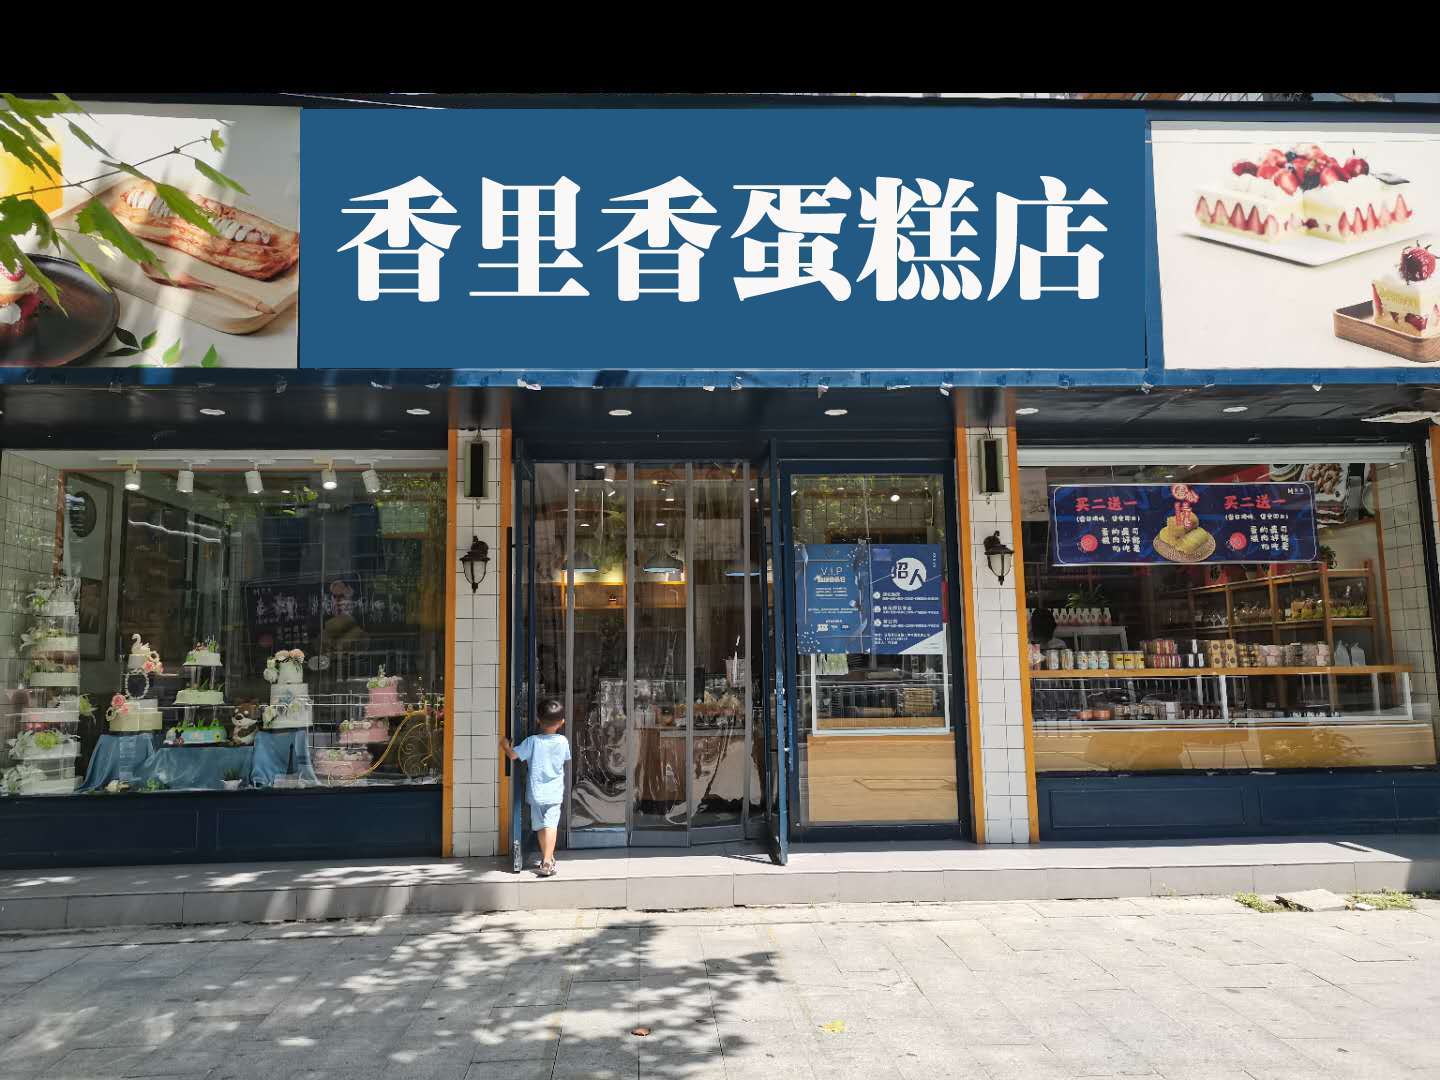 安庆有哪些蛋糕店,盘点安庆排名靠前的蛋糕店,安庆蛋糕店大全!